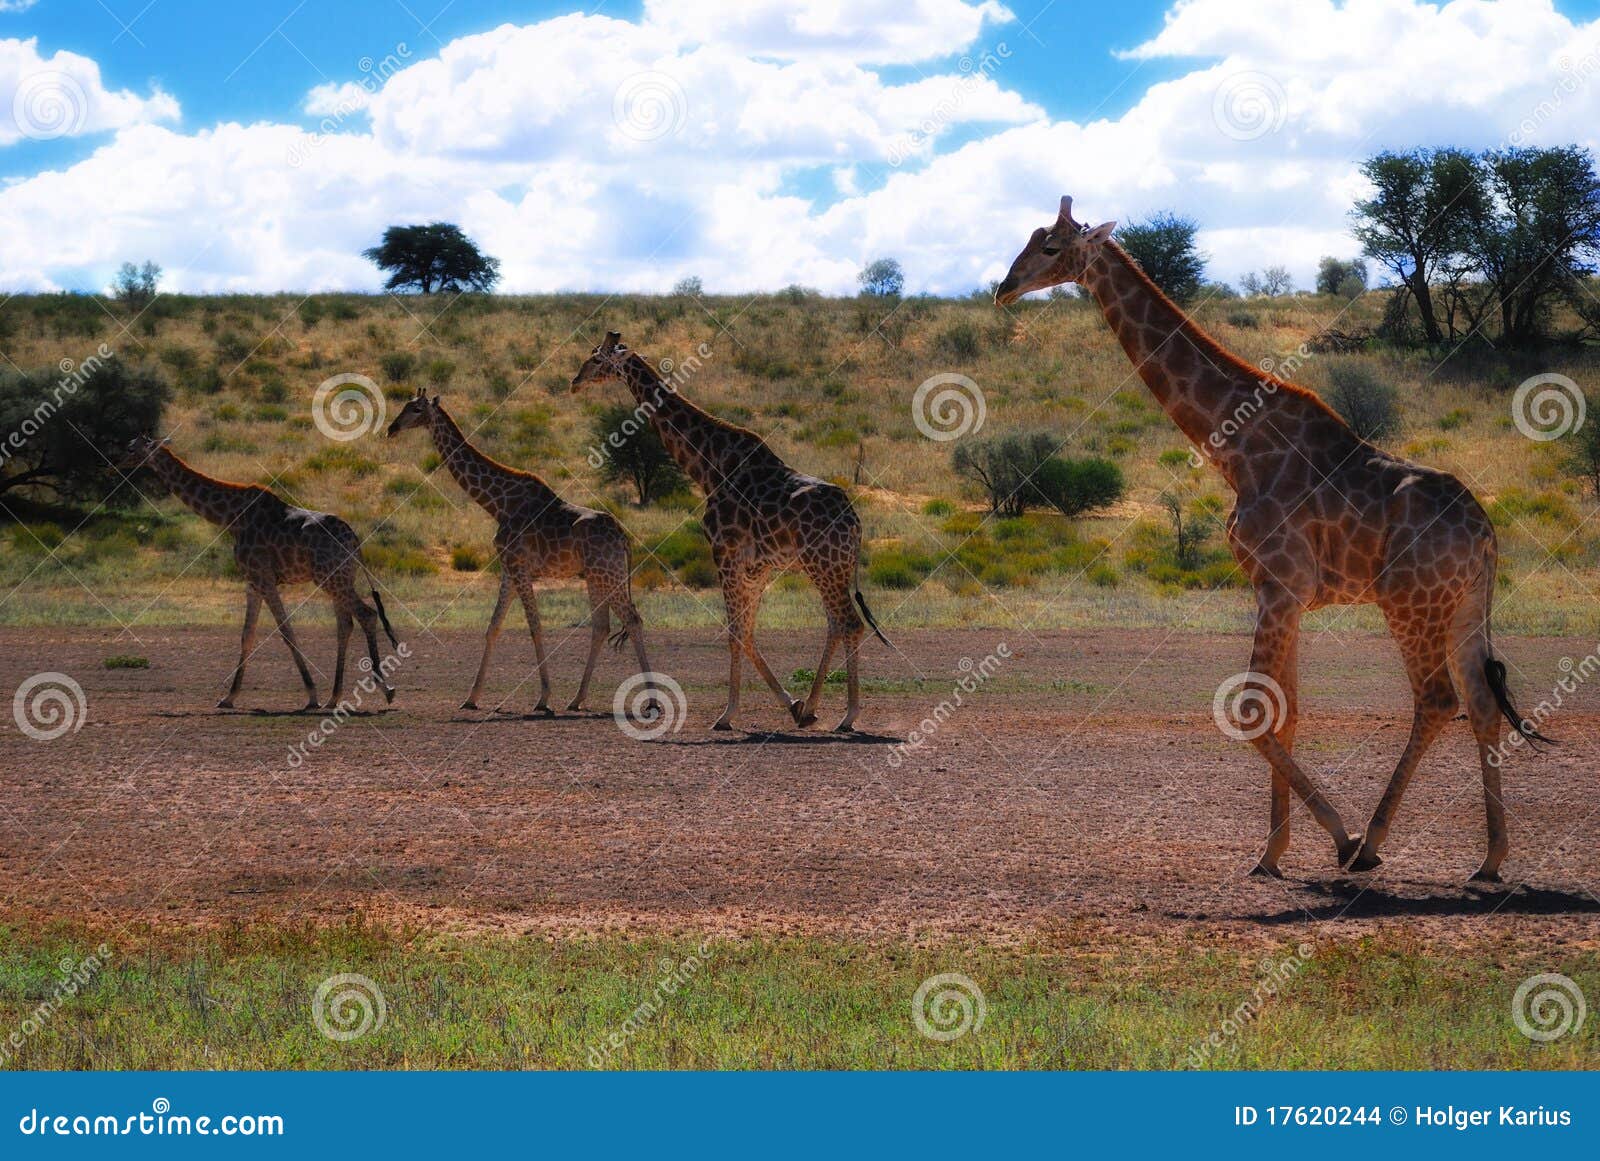 group of giraffes (giraffa camelopardalis)